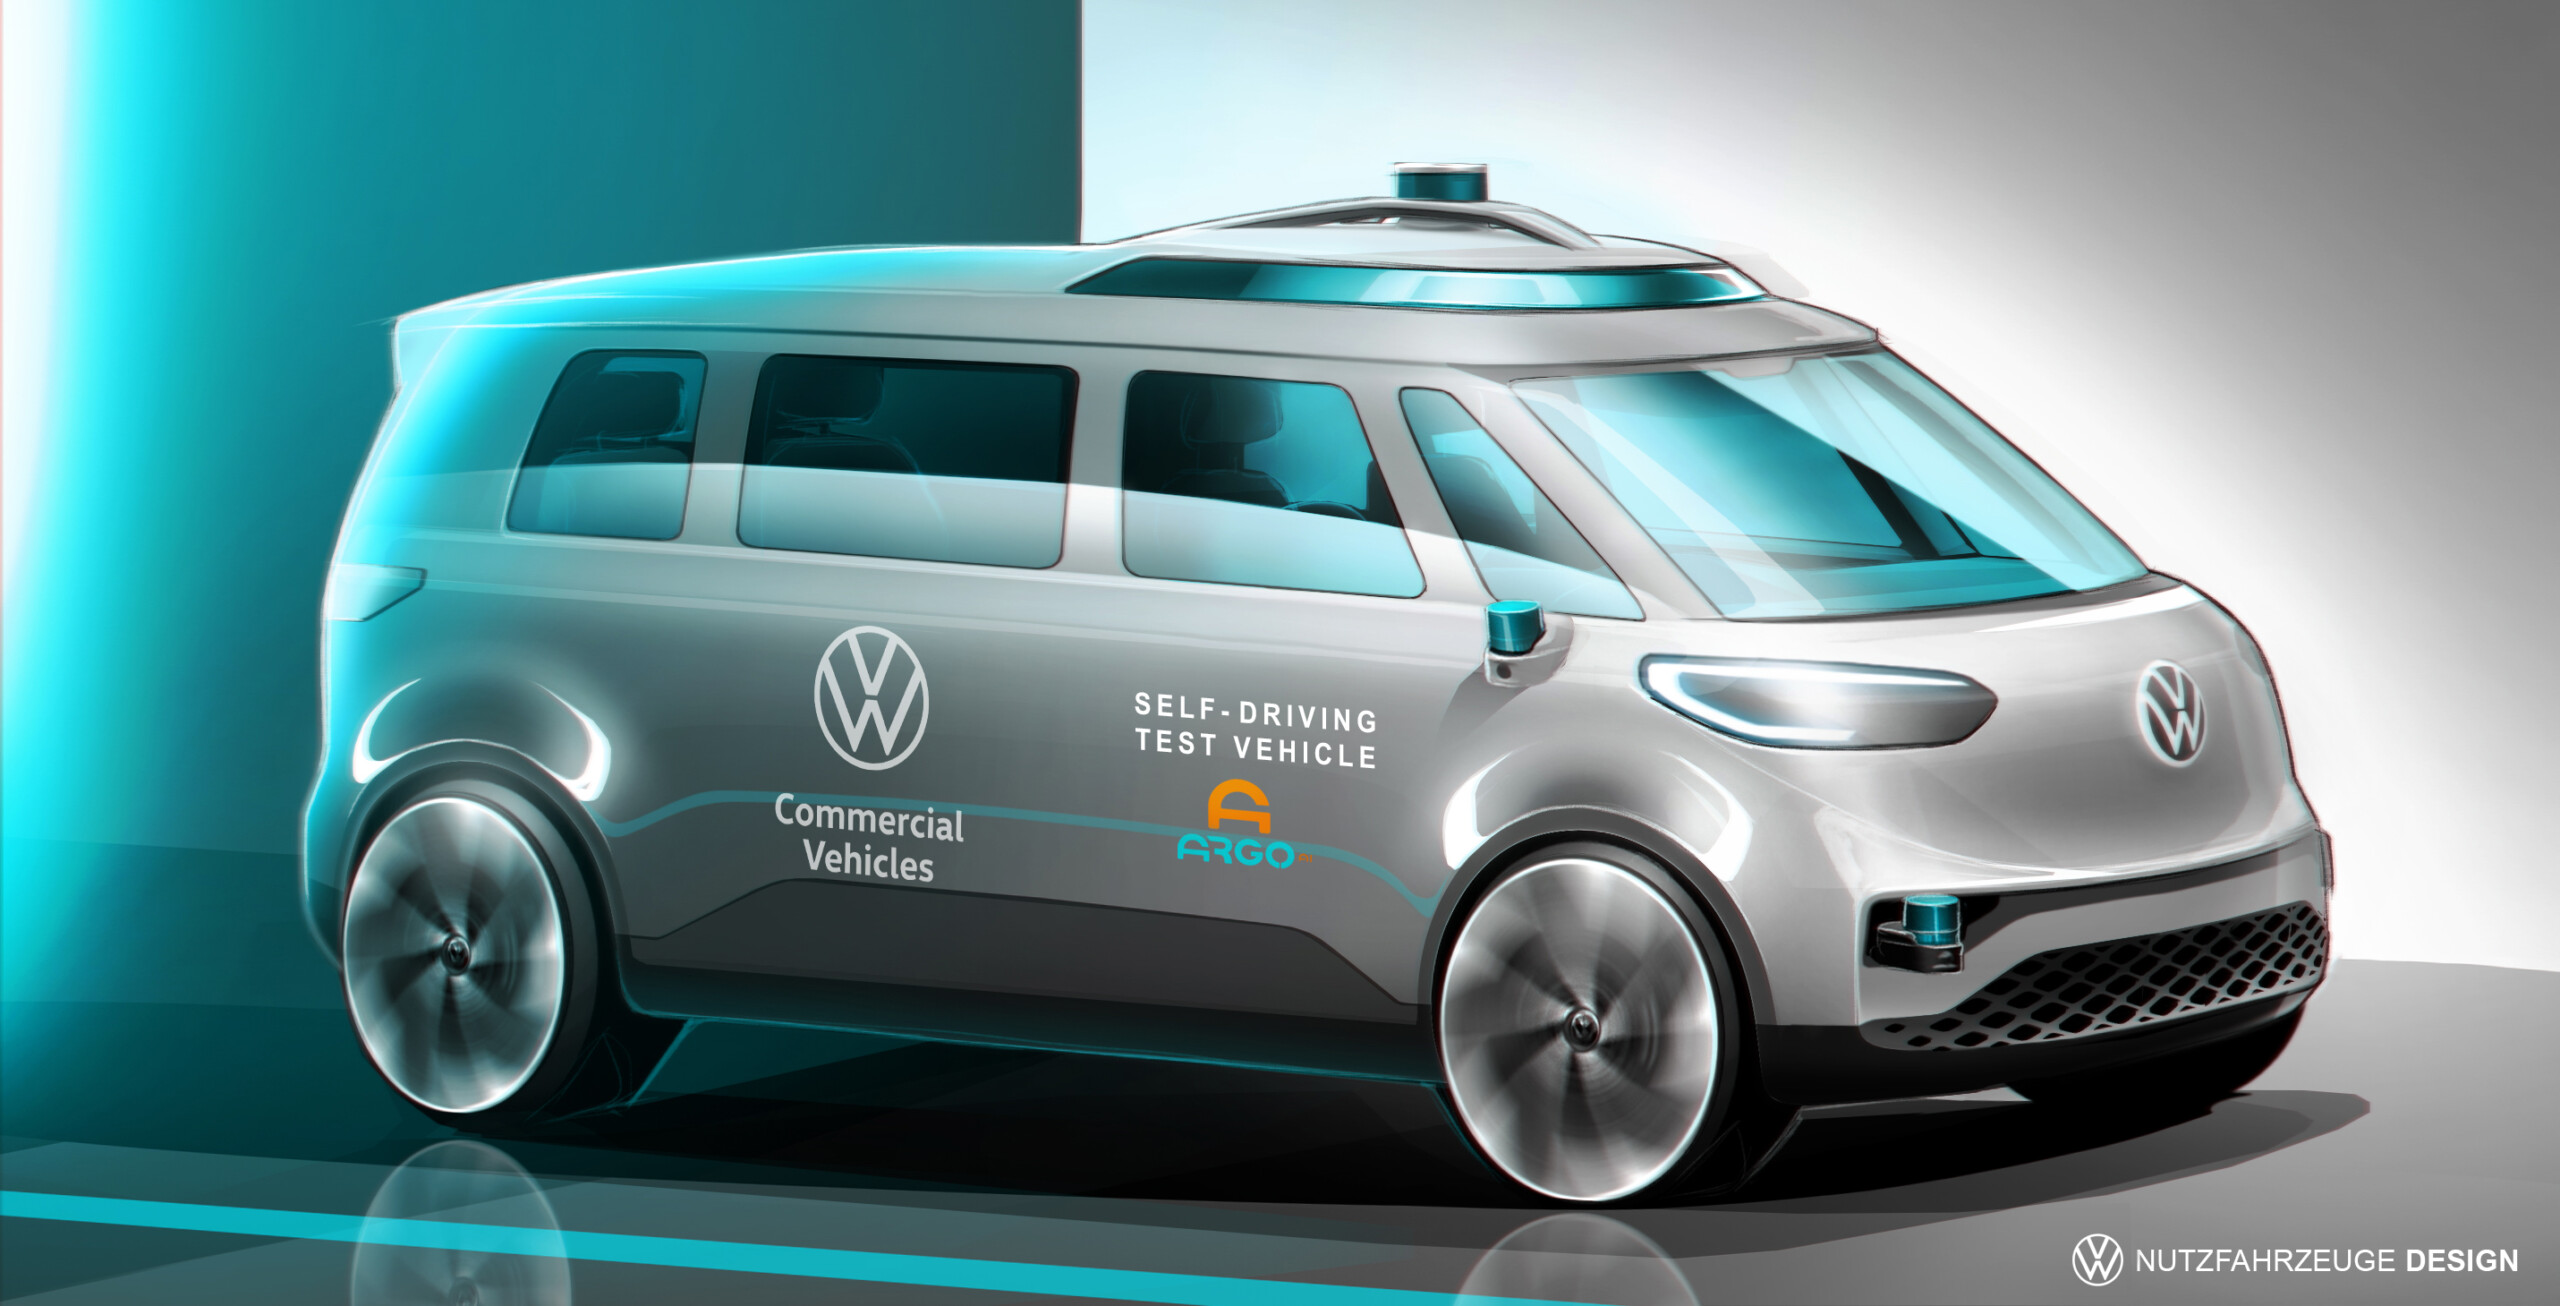 Volkswagen Idbuzz Le Combi électrique Veut Devenir 100 Autonome D